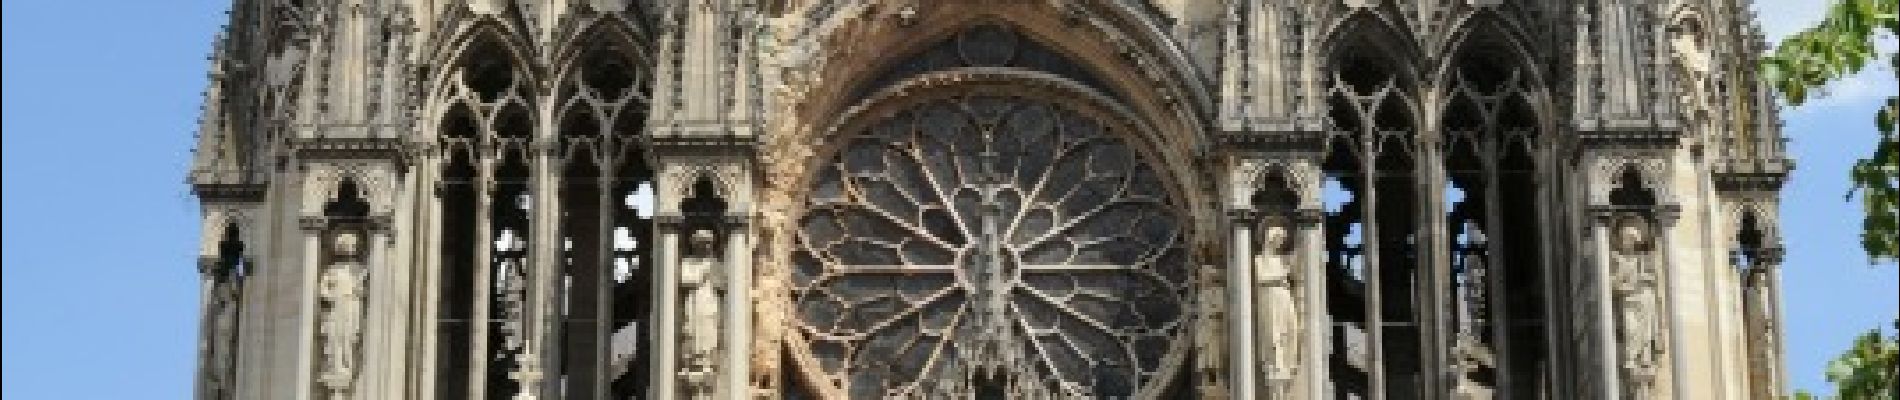 POI Reims - Cathédrale Notre Dame - Photo